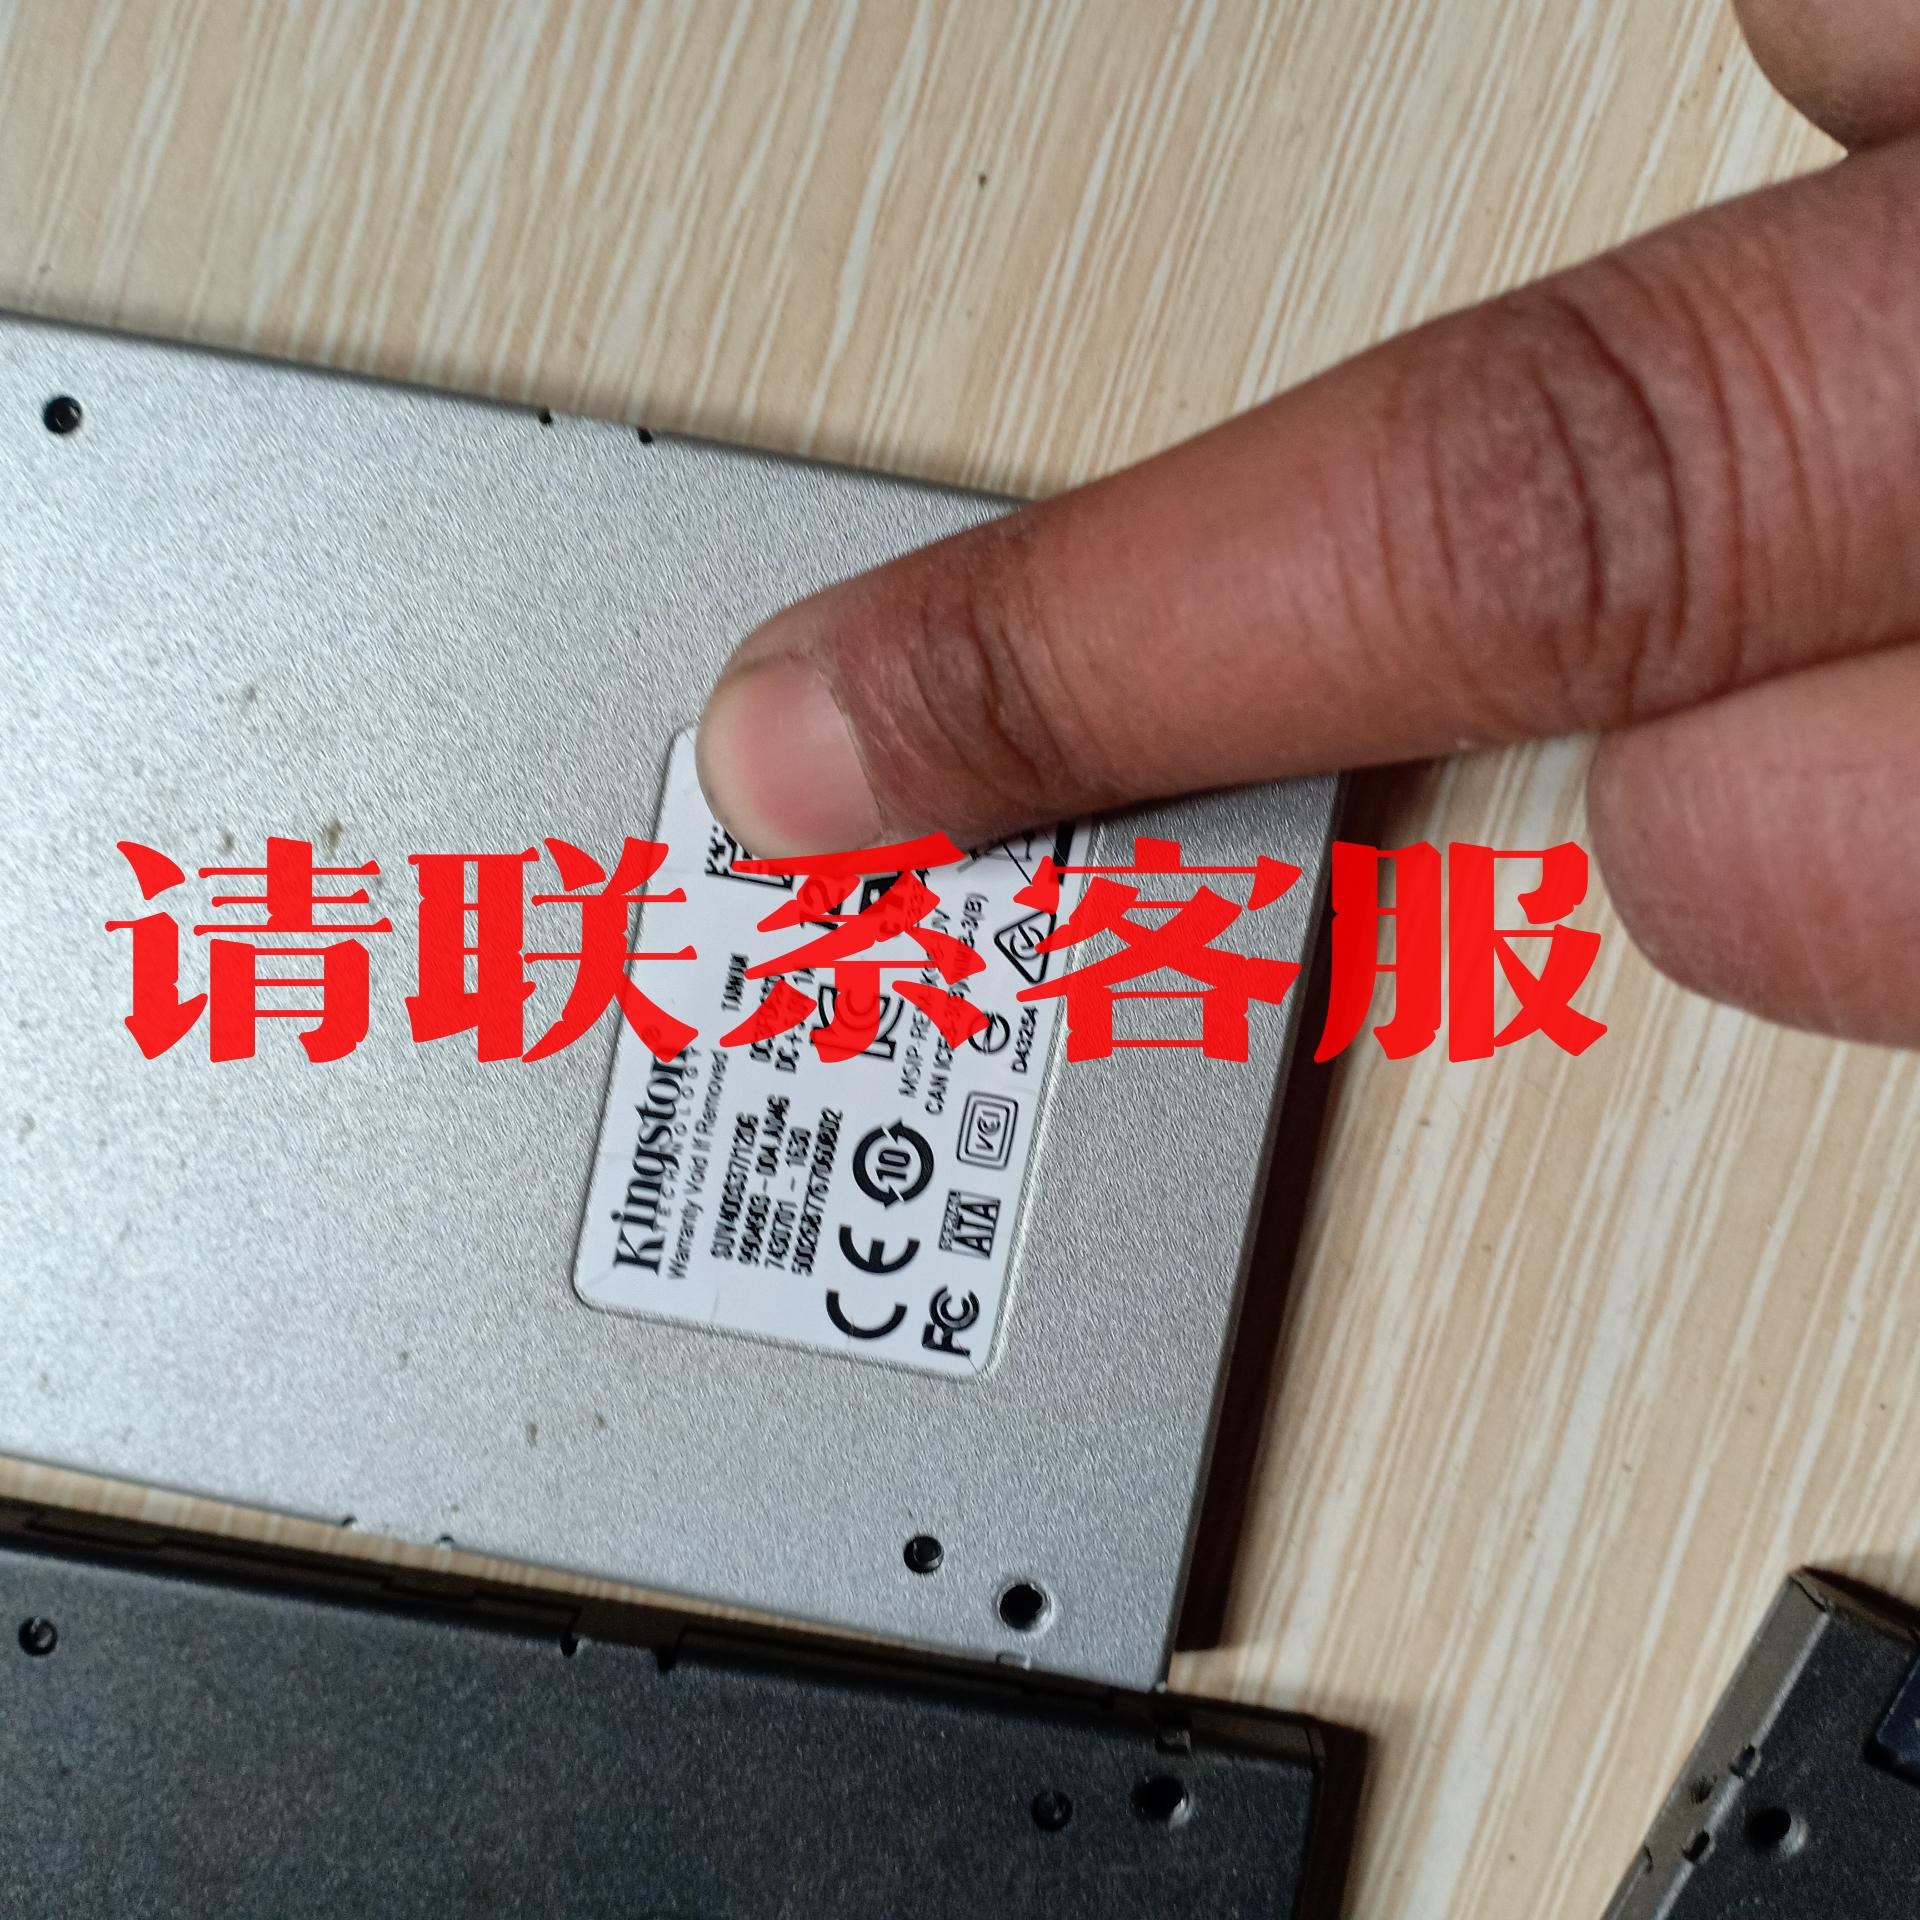 议价出售金士顿 V300 120G SSD 2.5寸固态硬盘